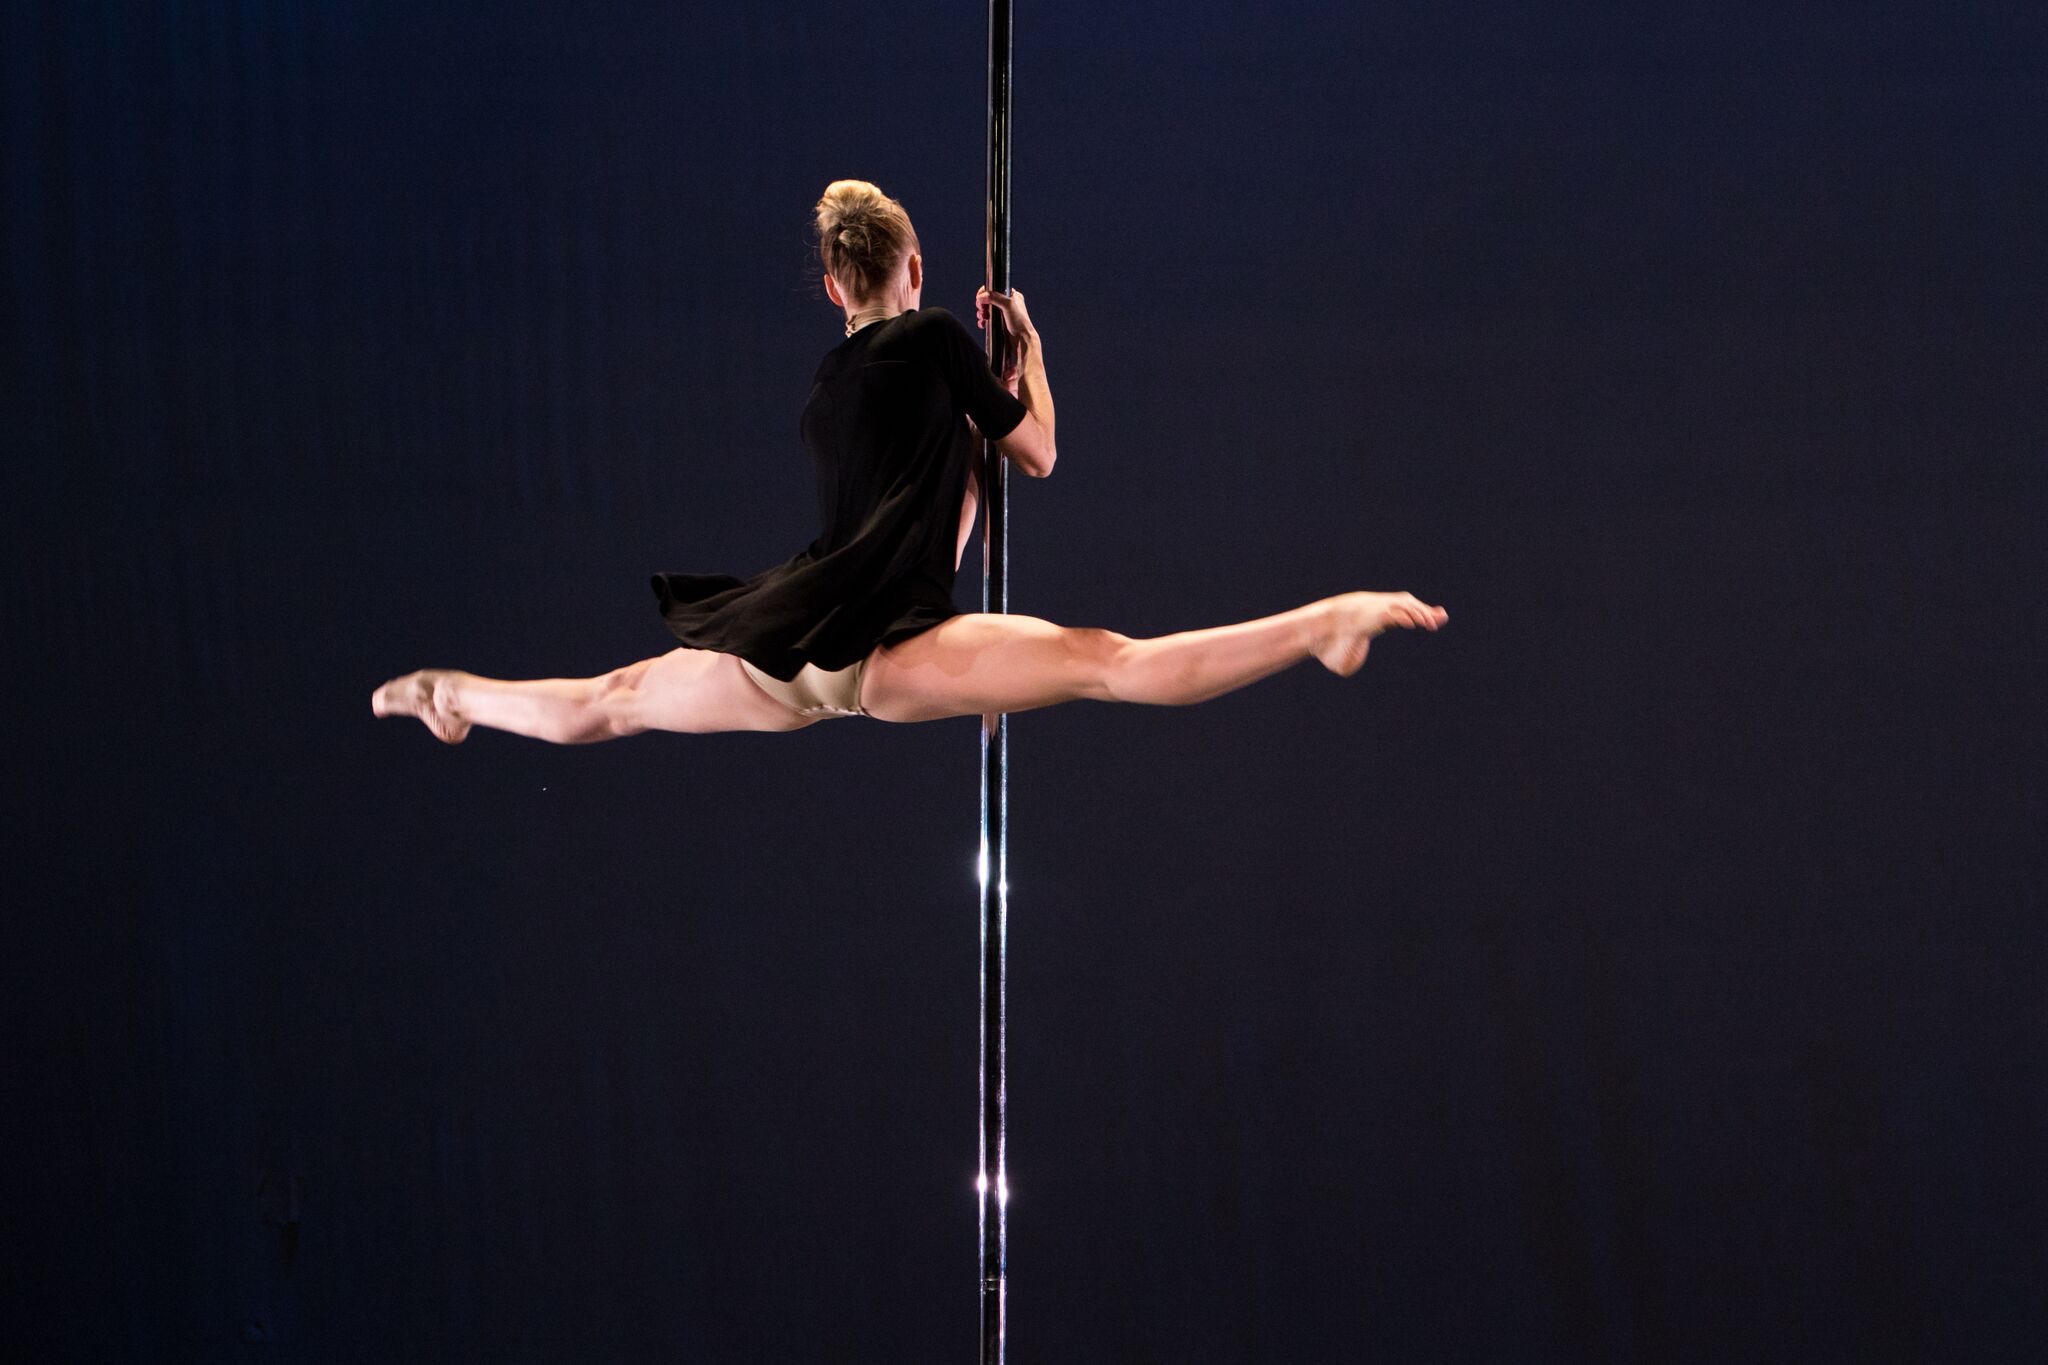 Tekla Kostek holds onto a metal pole in thee dark, her legs open in a horizontal split